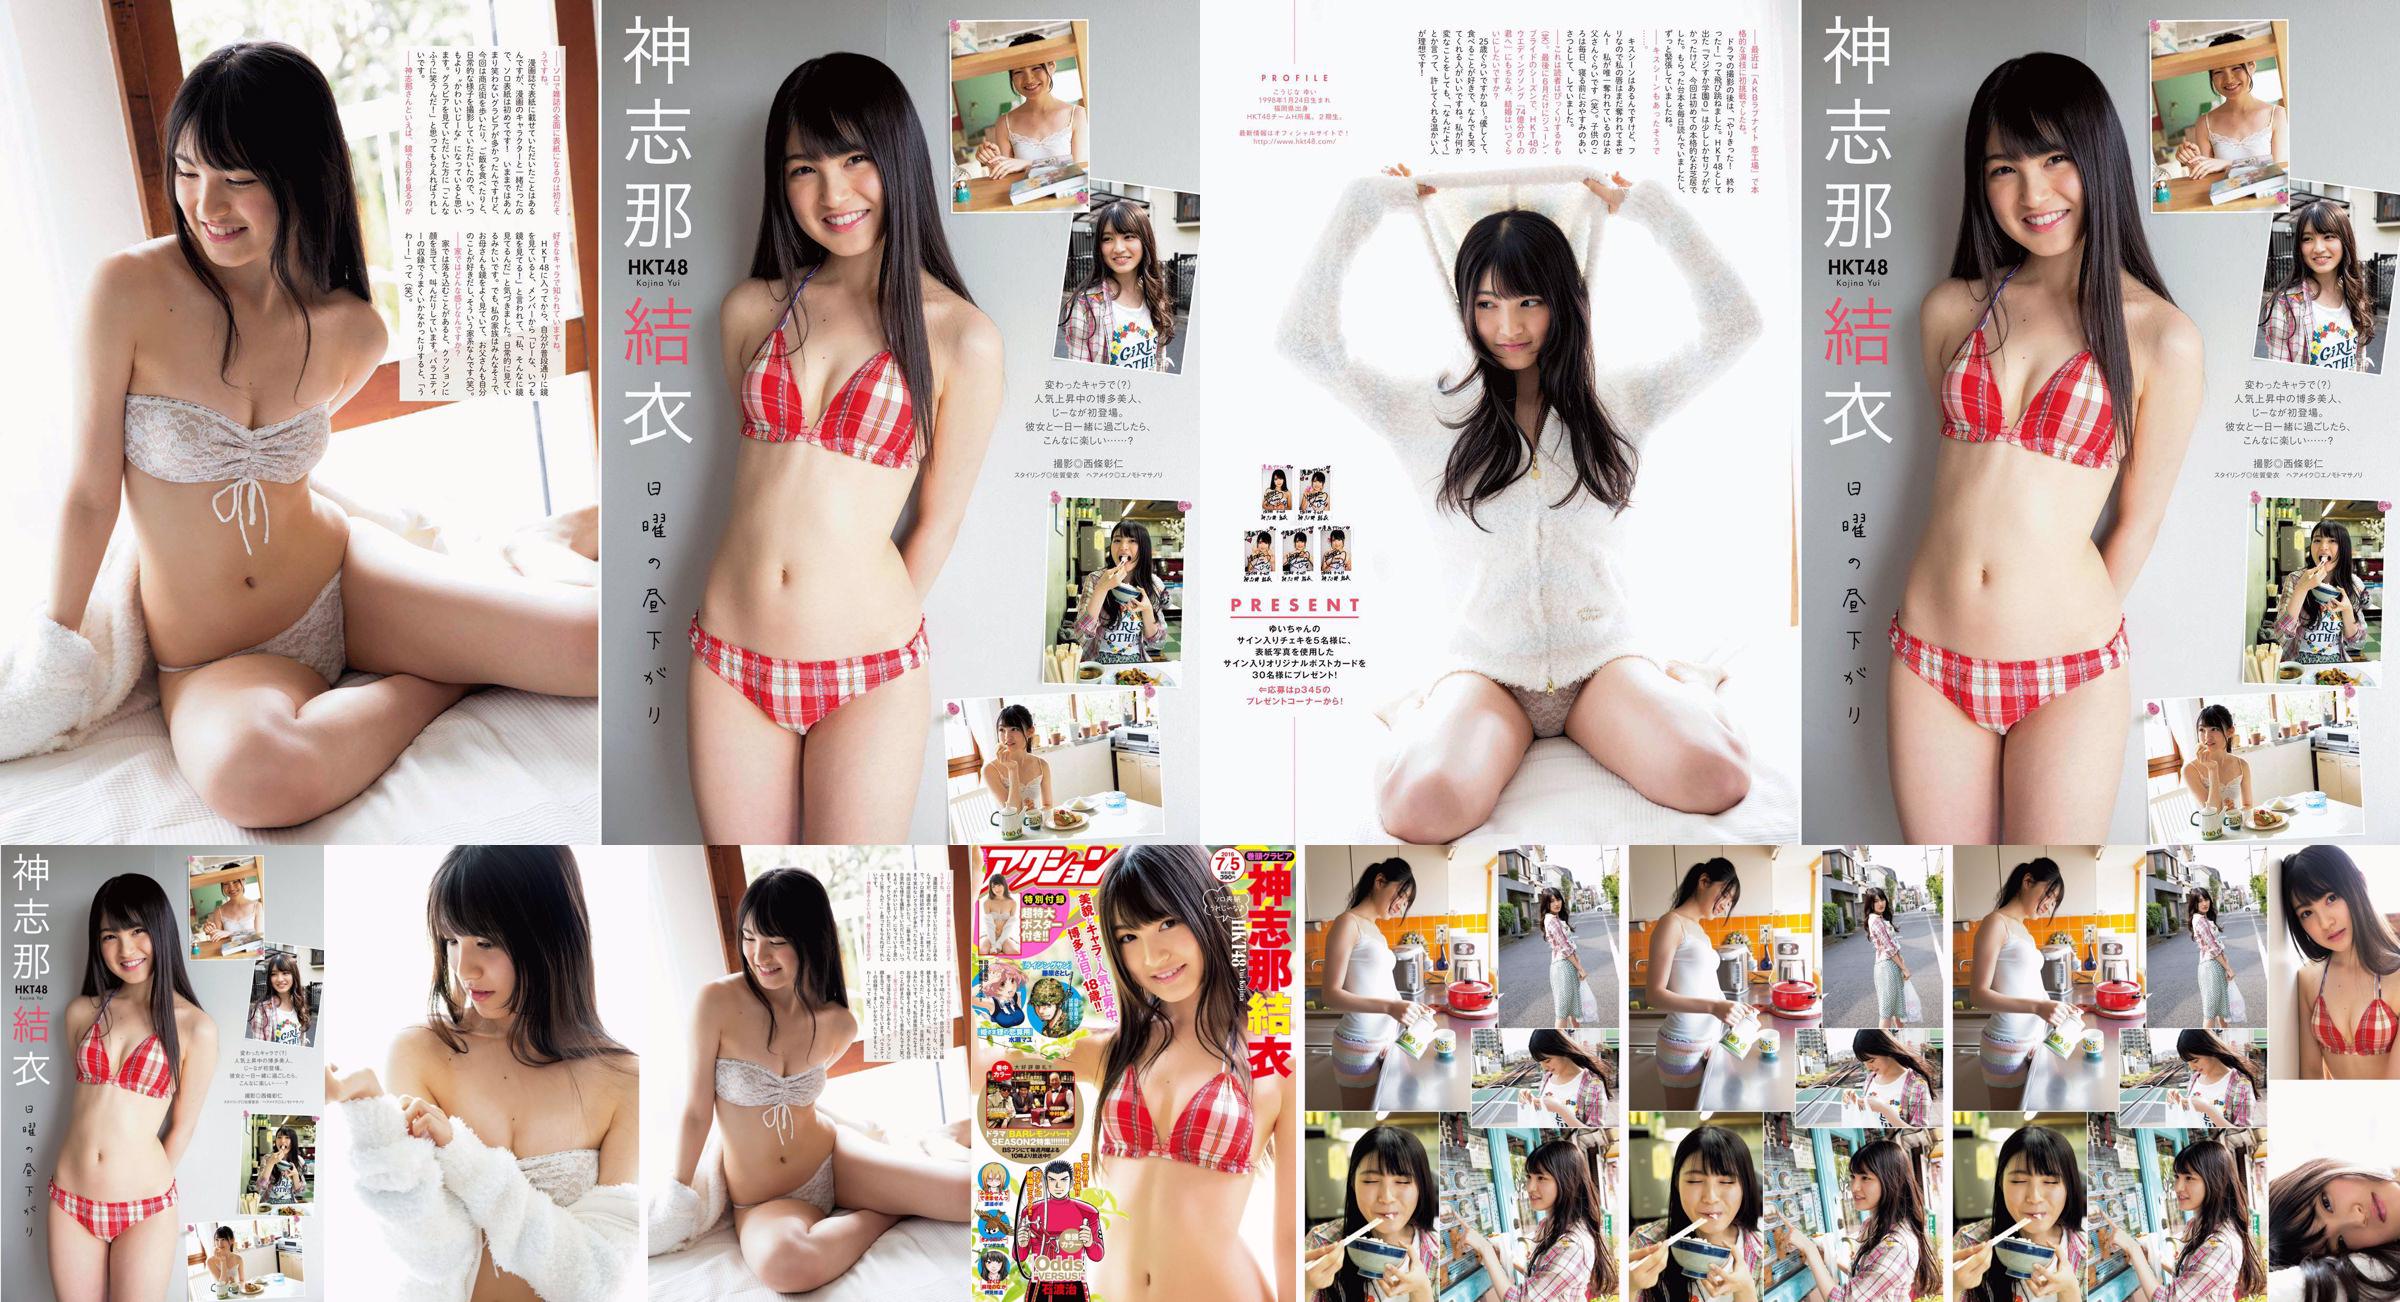 [Manga Action] Shinshina Yui 2016 N ° 13 Photo Magazine No.569767 Page 1